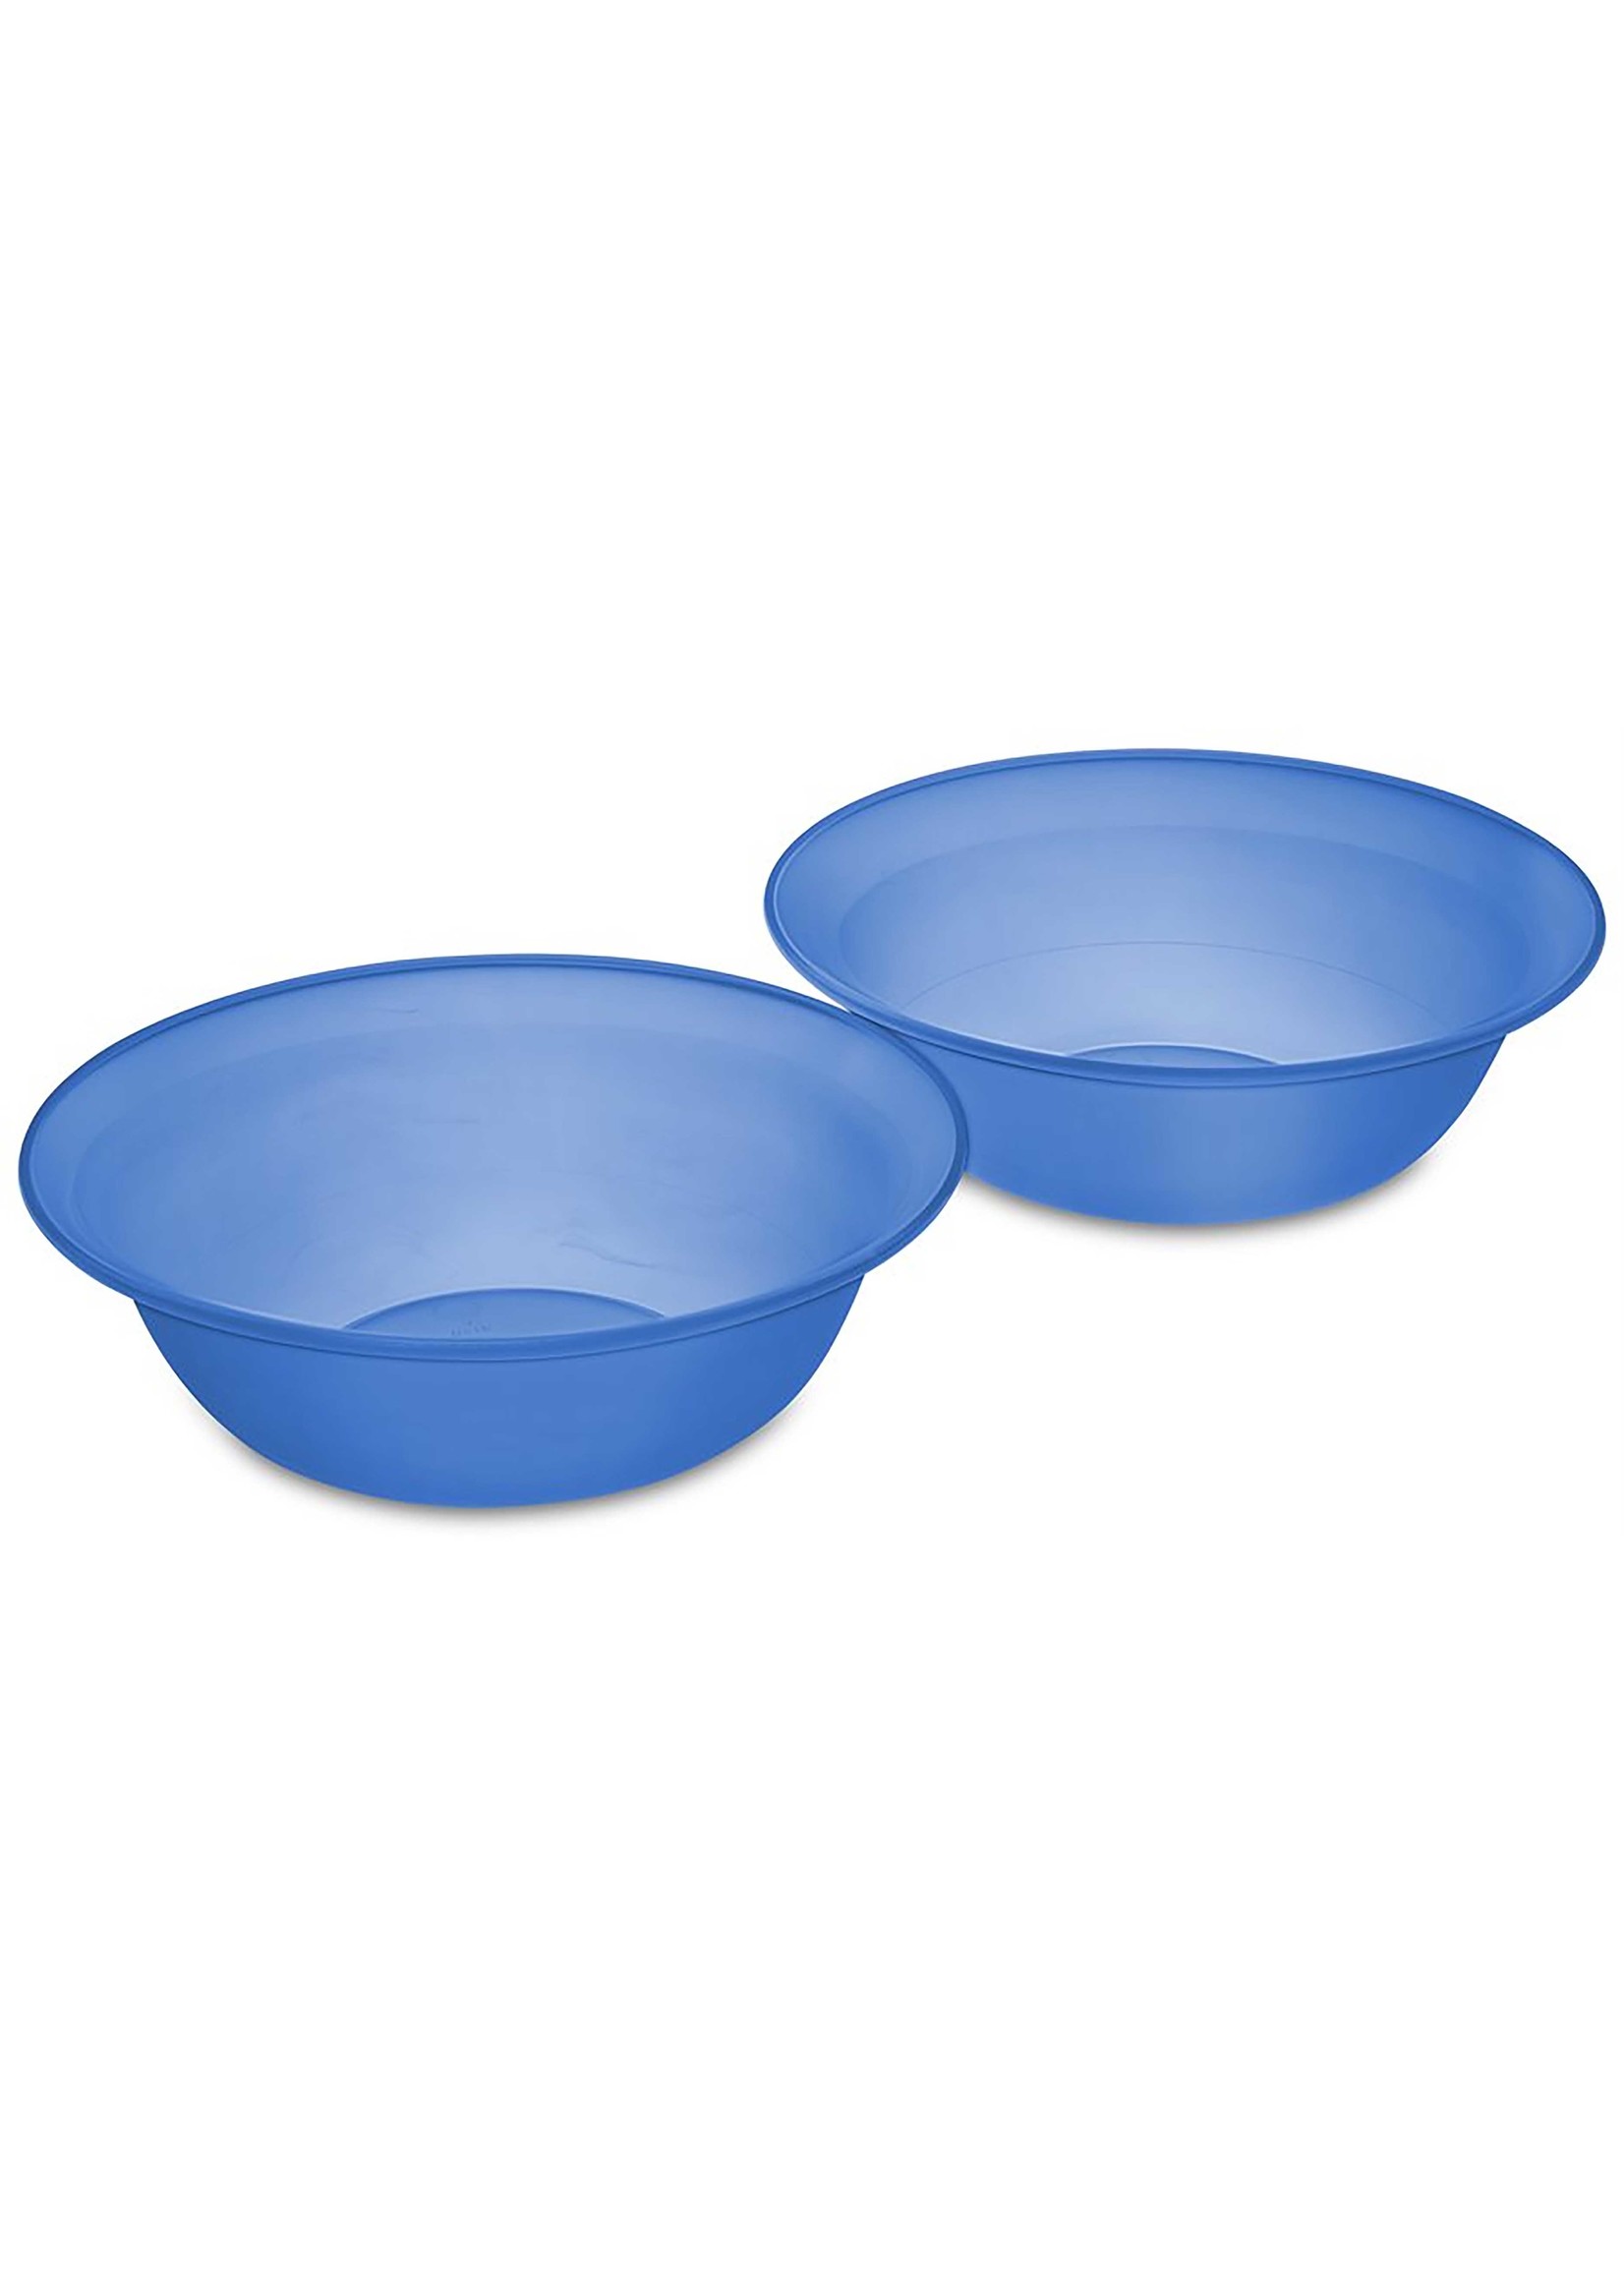 B2 FASHIONS INC Sterilite Set of 2 Blue Bowls 1.4L